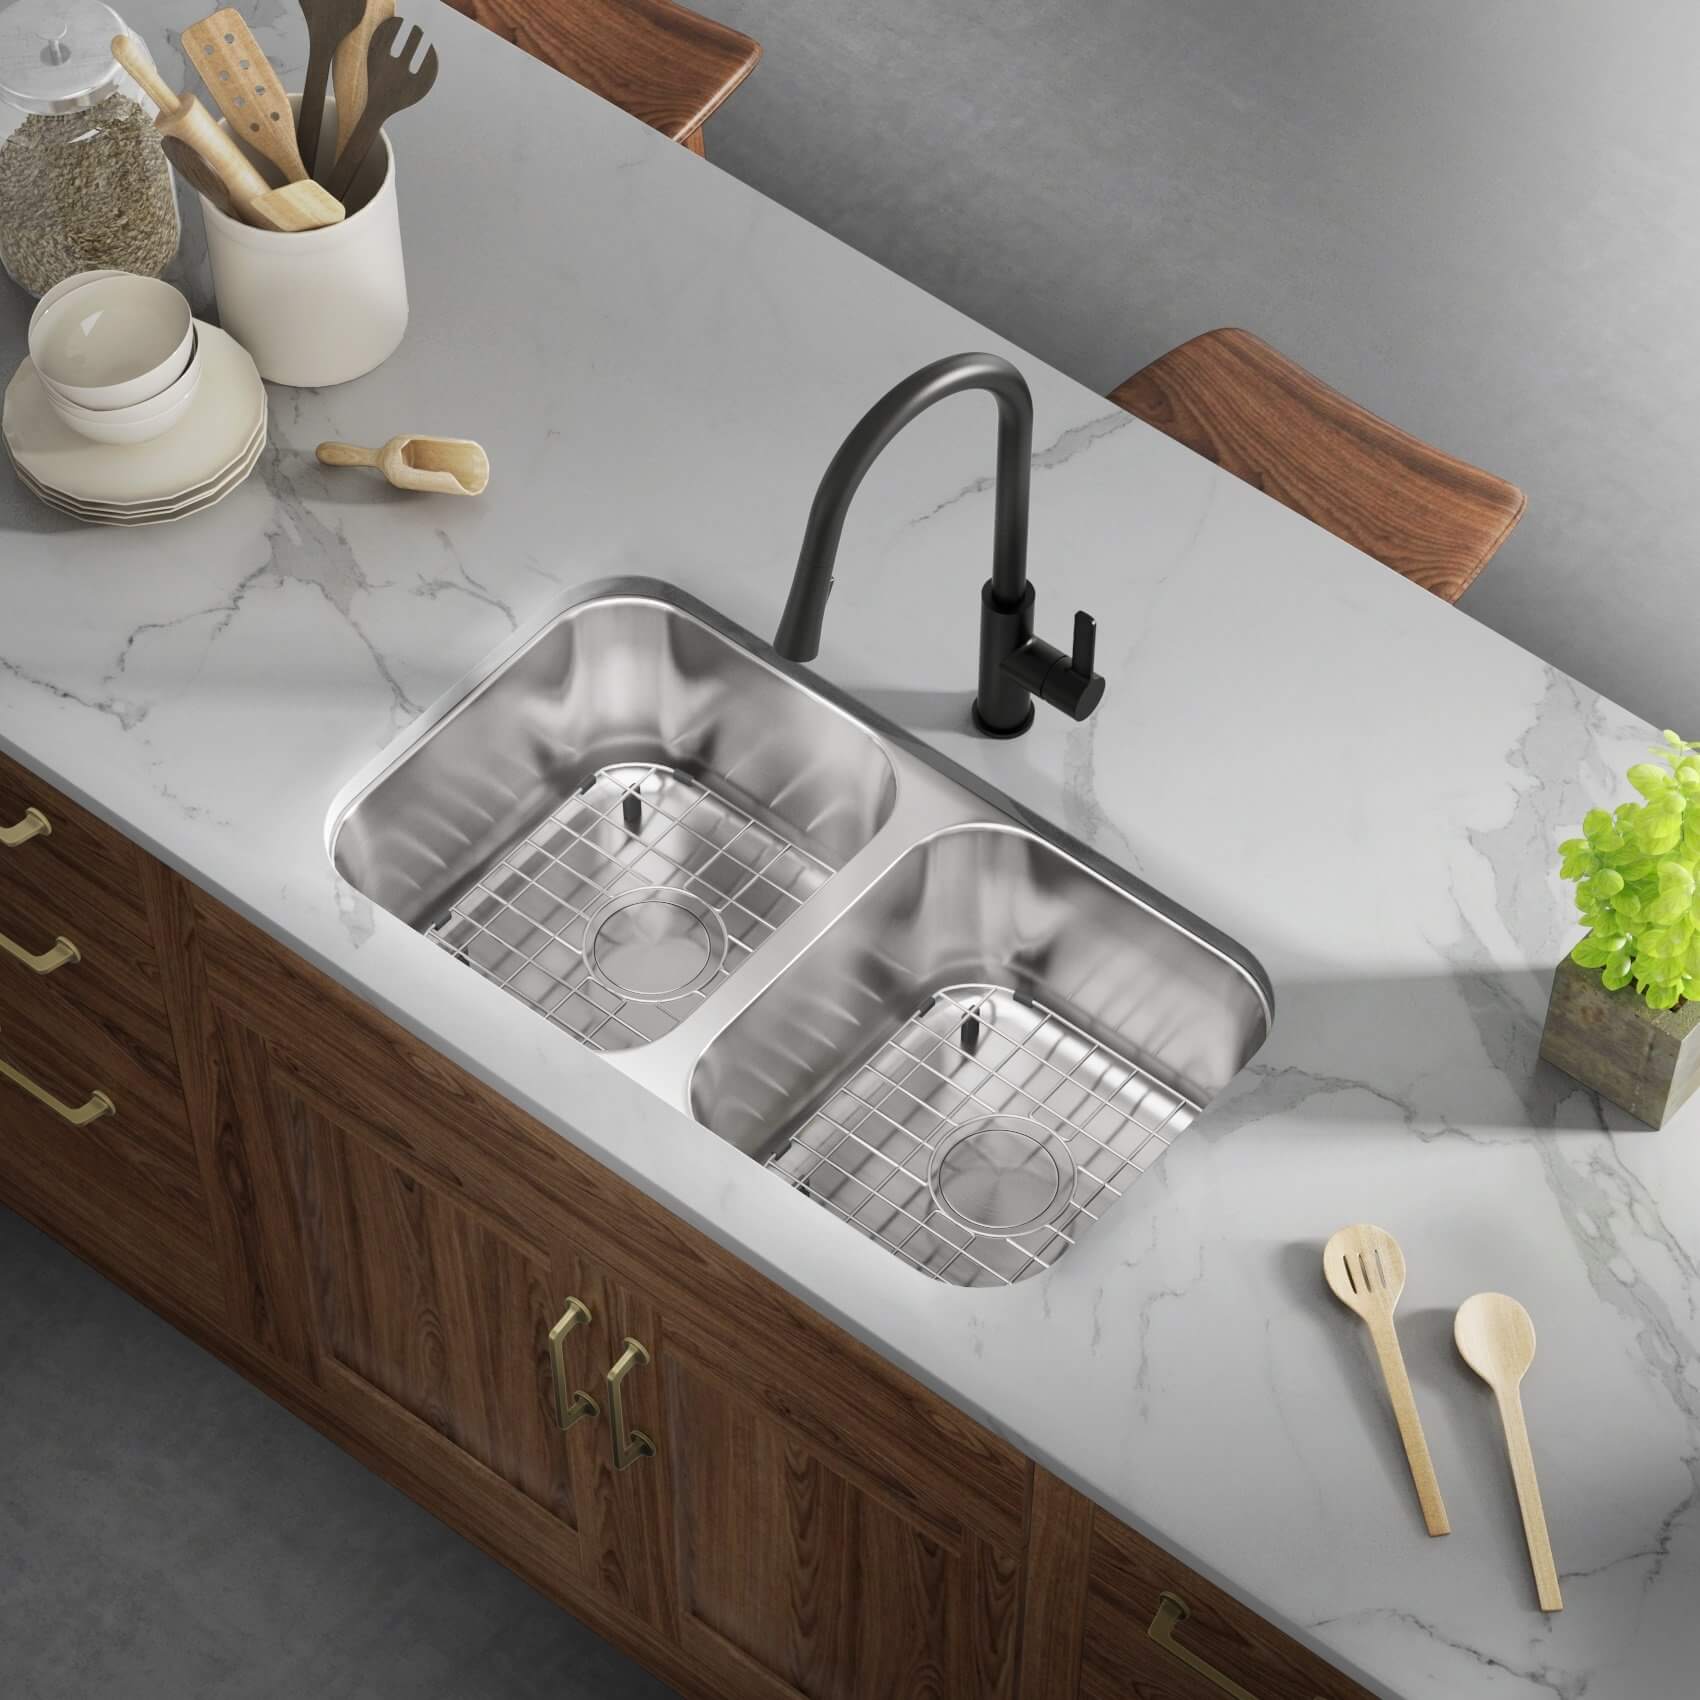 Allora USA - LD-3218 Kitchen Sink - 32 x 18 x 8 Undermount Low Divider Double Bowl 18 Gauge Stainless Steel Kitchen Sink